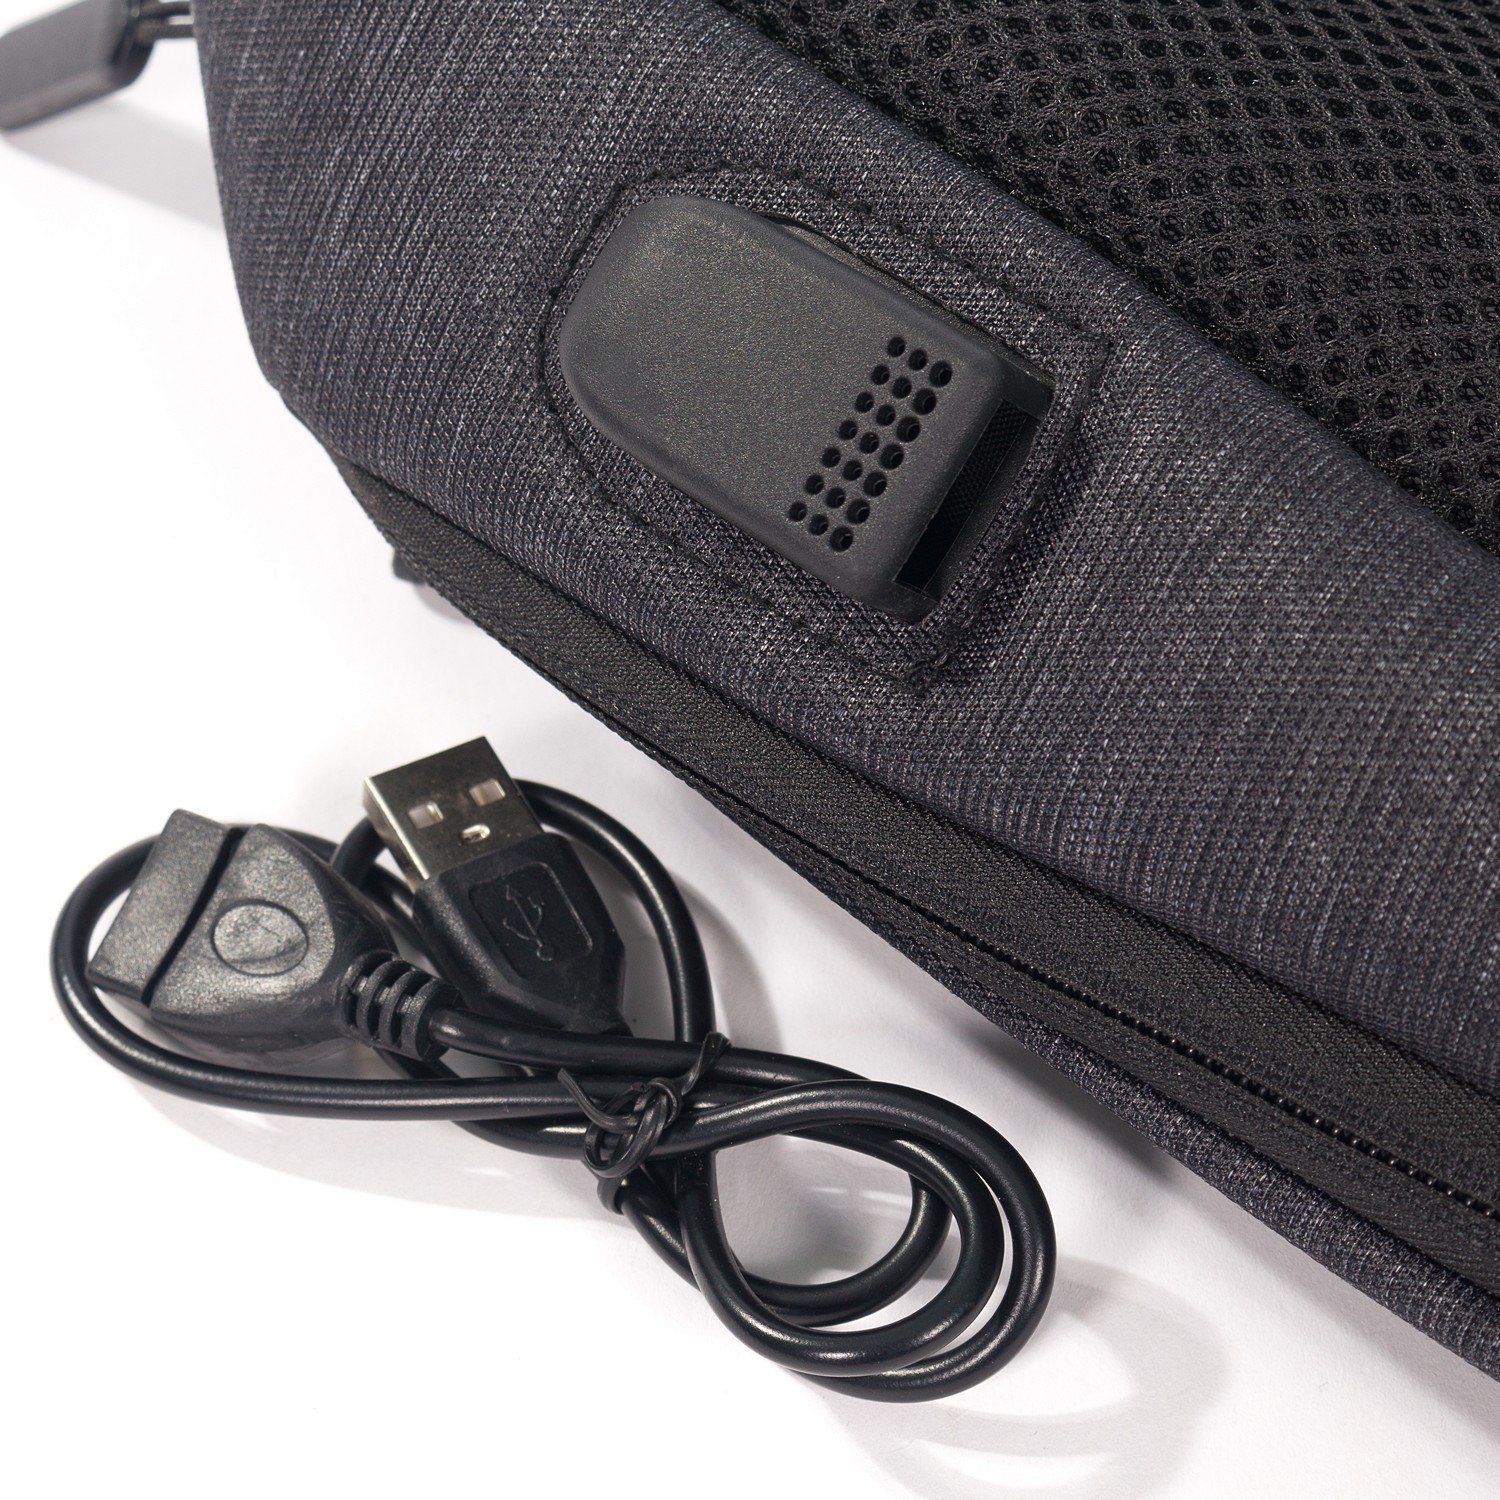 Рюкзак мужской городской, черный однотонный, с широкими лямками, с USB и чехлом от дождя, объем 26 л